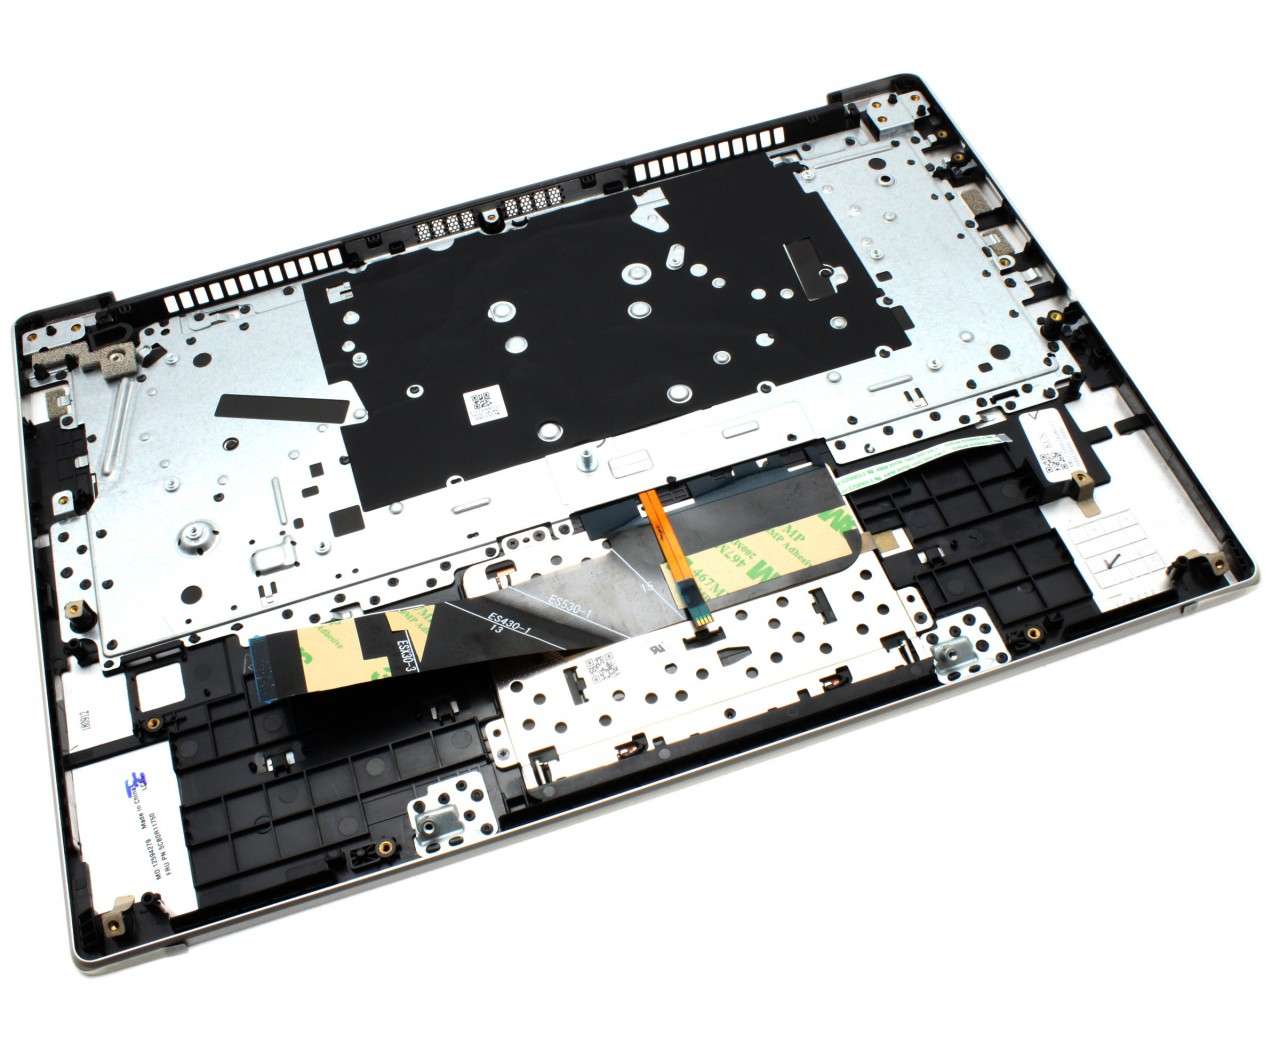 Tastatura Lenovo Yoga IdeaPad 530S-14ARR Gri cu Palmrest Argintiu si TouchPad iluminata backlit image0